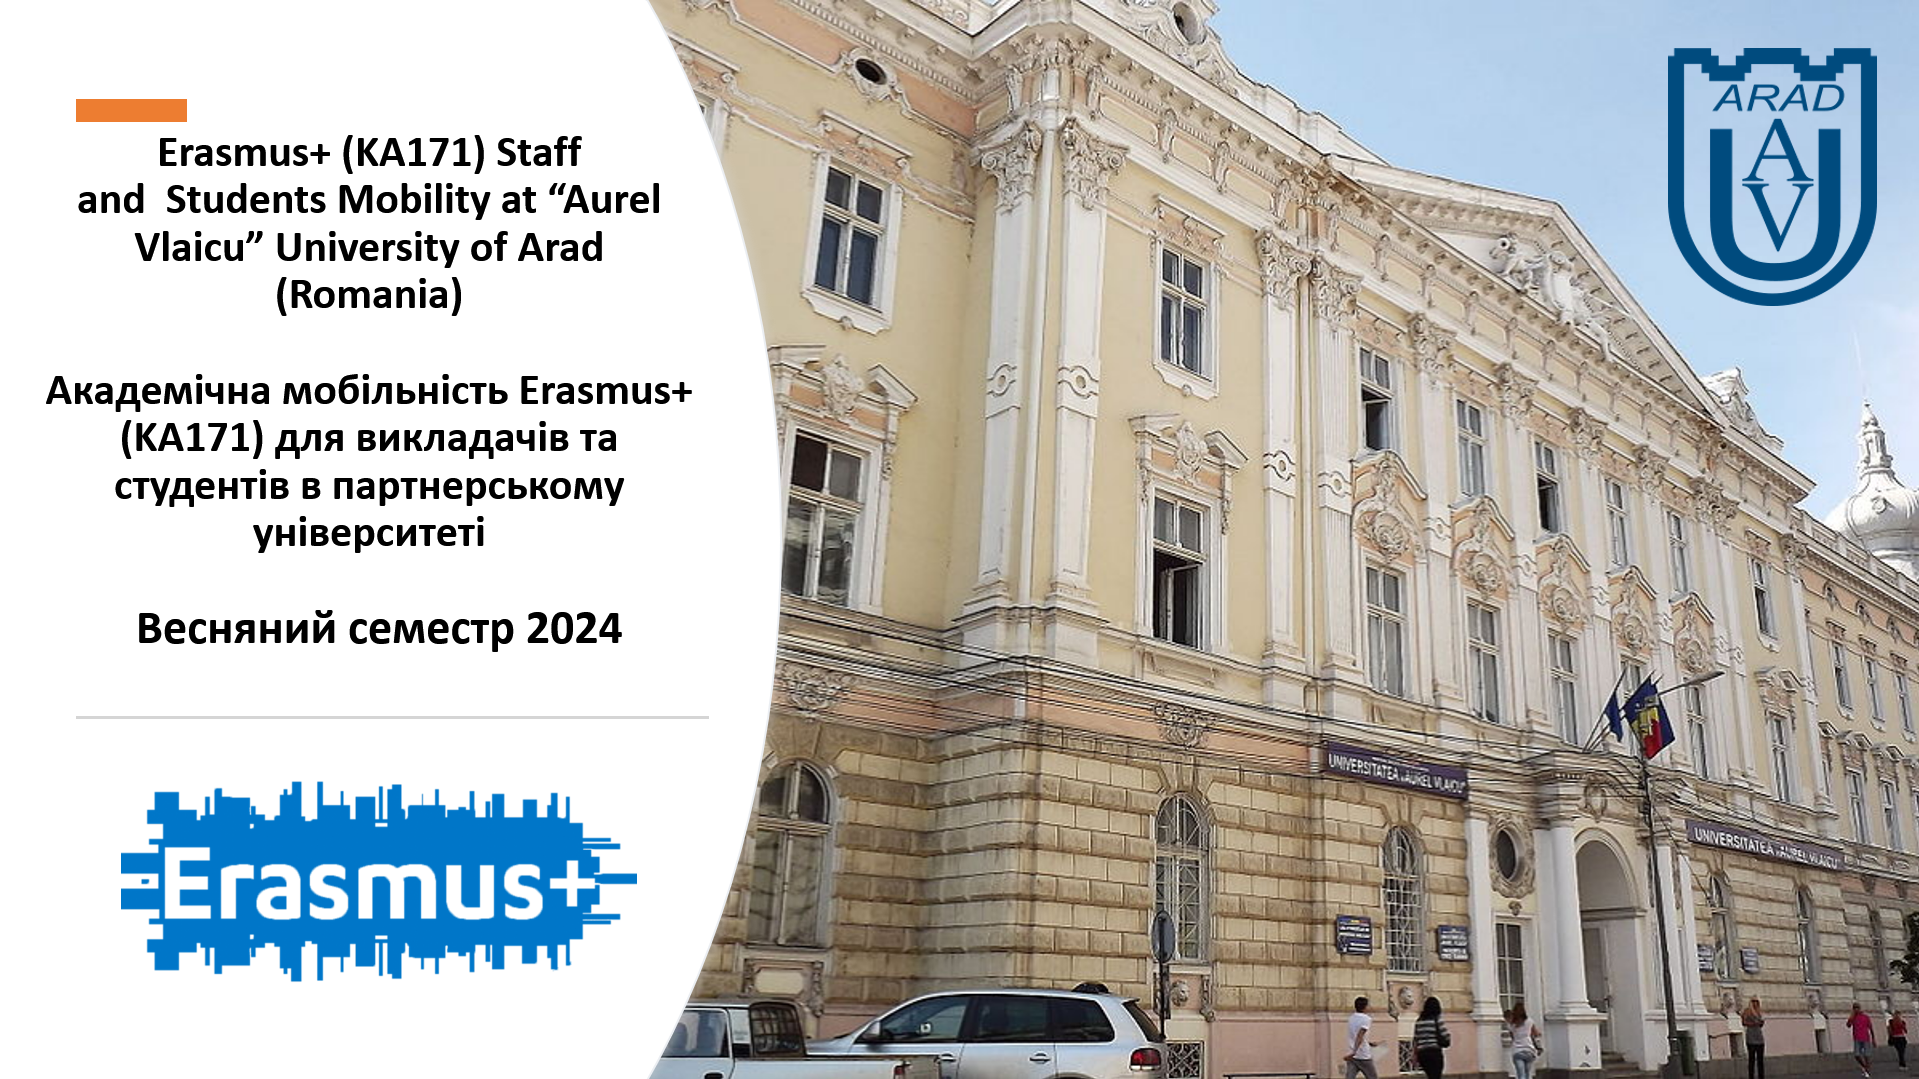 Румунський університет «Aurel Vlaicu» University of Arad запрошує  студентів та  викладачів  до участі в програмах академічної мобільності Erasmus+ у весняному семестрі 2024 року